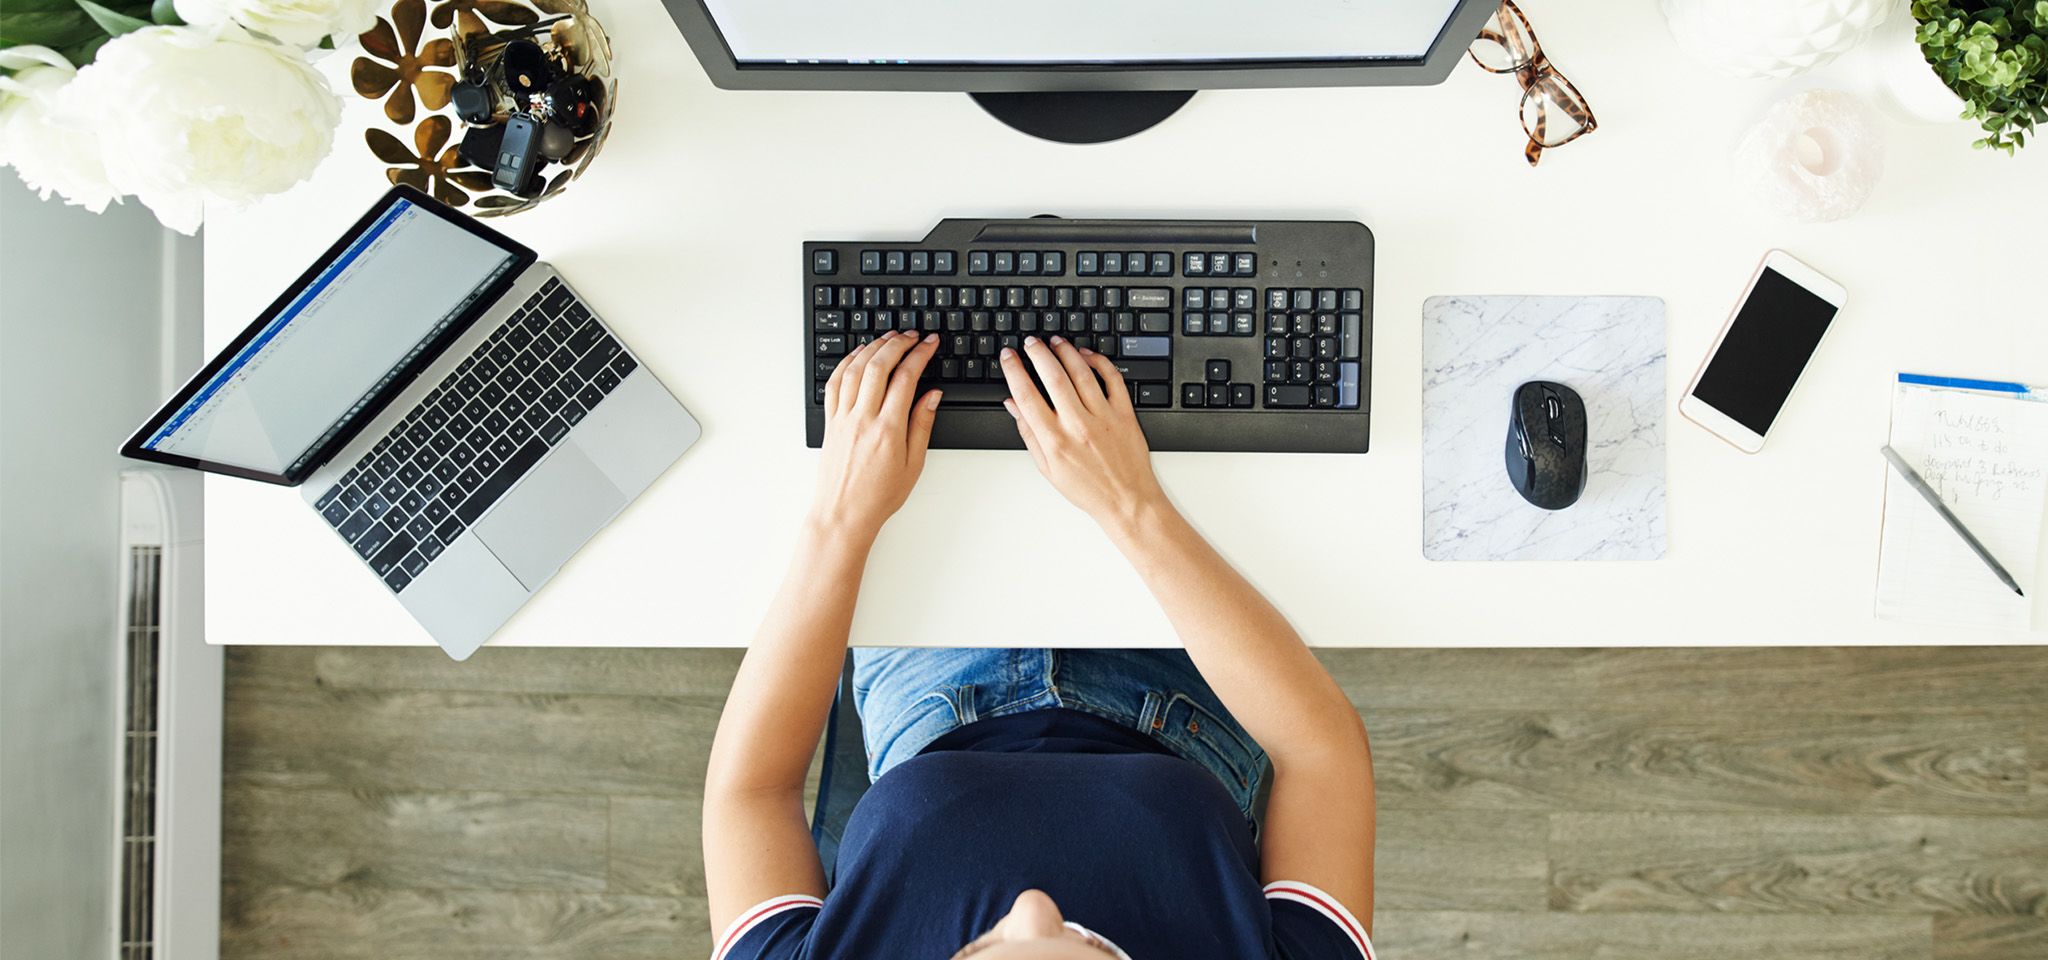 Vista dall’alto raffigurante le mani di una persona che lavora a una tastiera, su una scrivania per computer, con un monitor, un laptop, un mouse e uno smartphone accanto